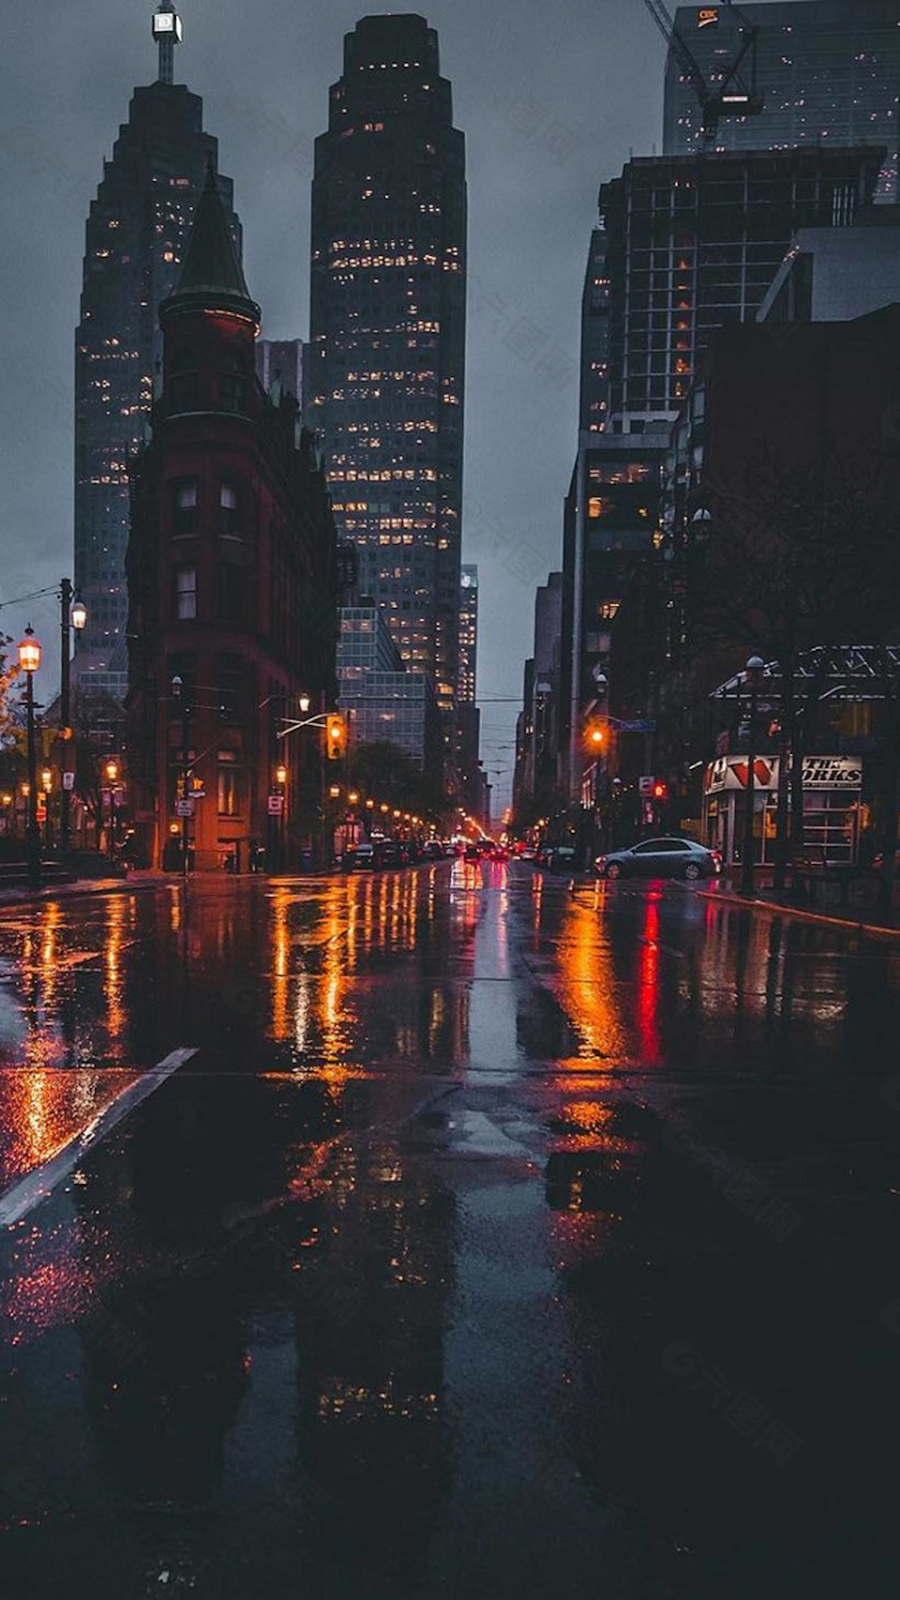 50+ mẫu ảnh đường phố buồn tâm trạng nhất, bi thương nhất